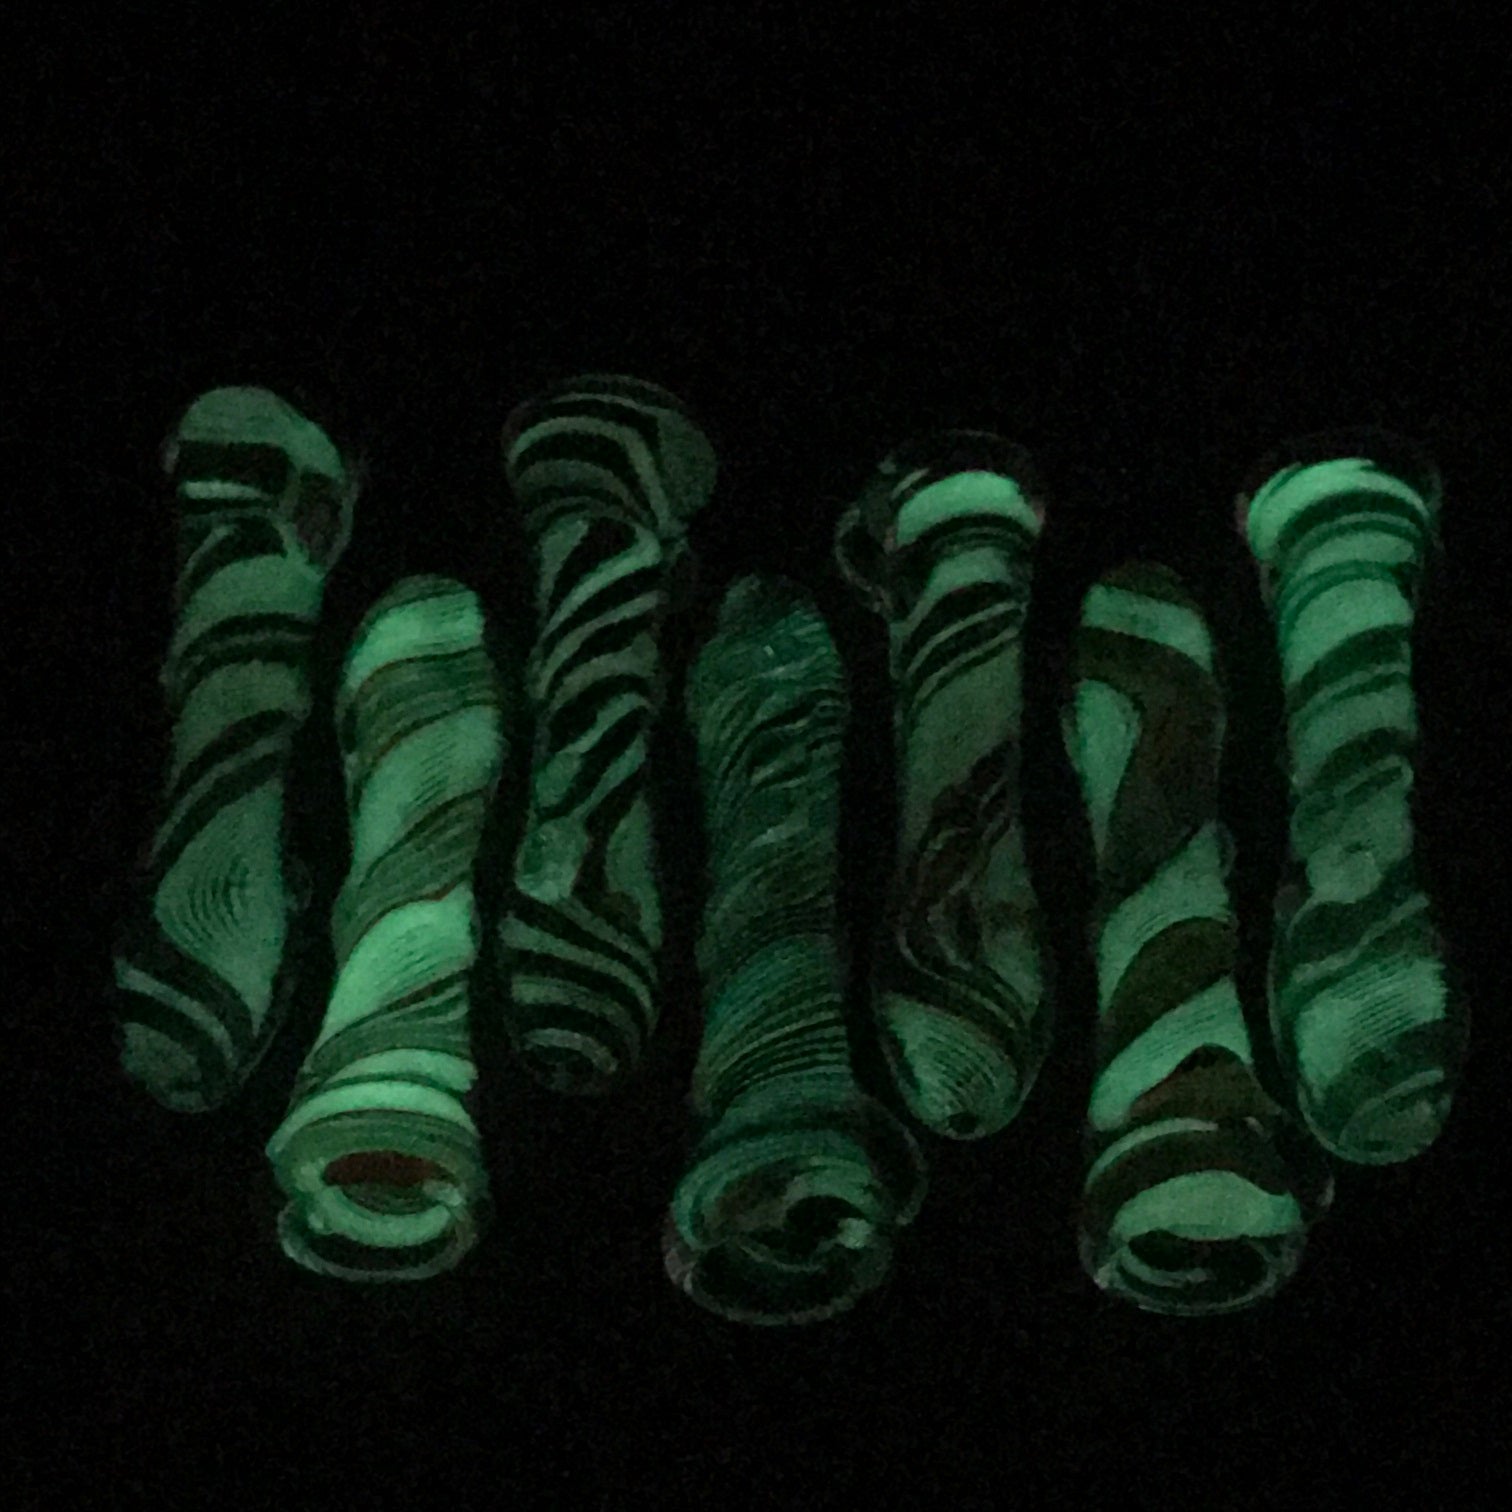 Rotational Science Glass Glow in the Dark Twist Lines Onie